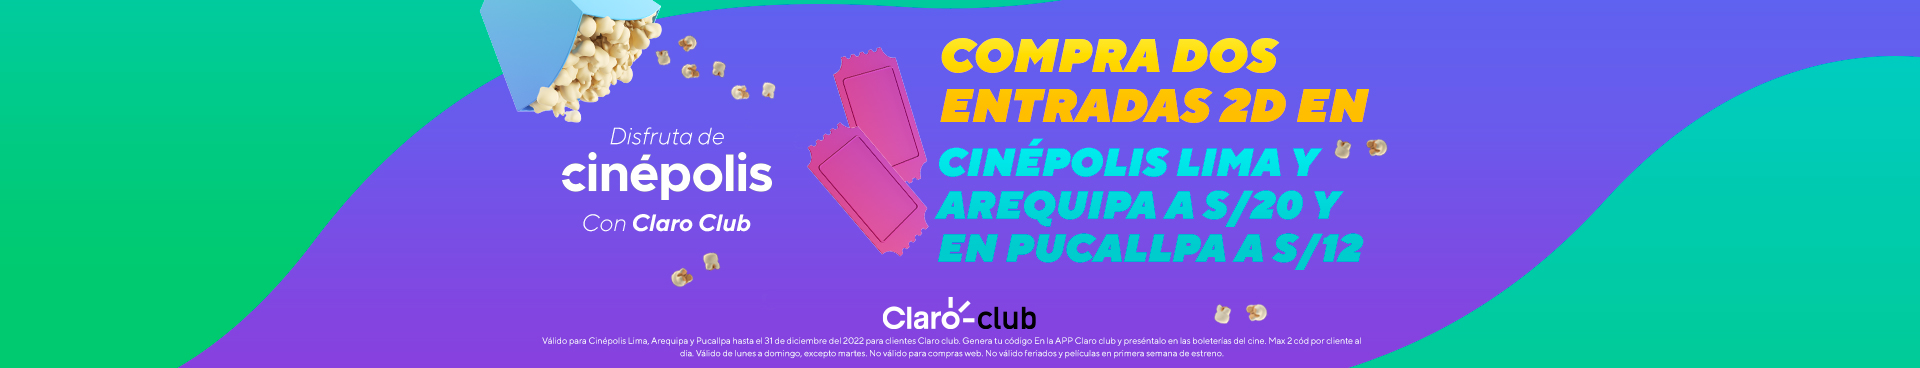 Promocion Club Claro video